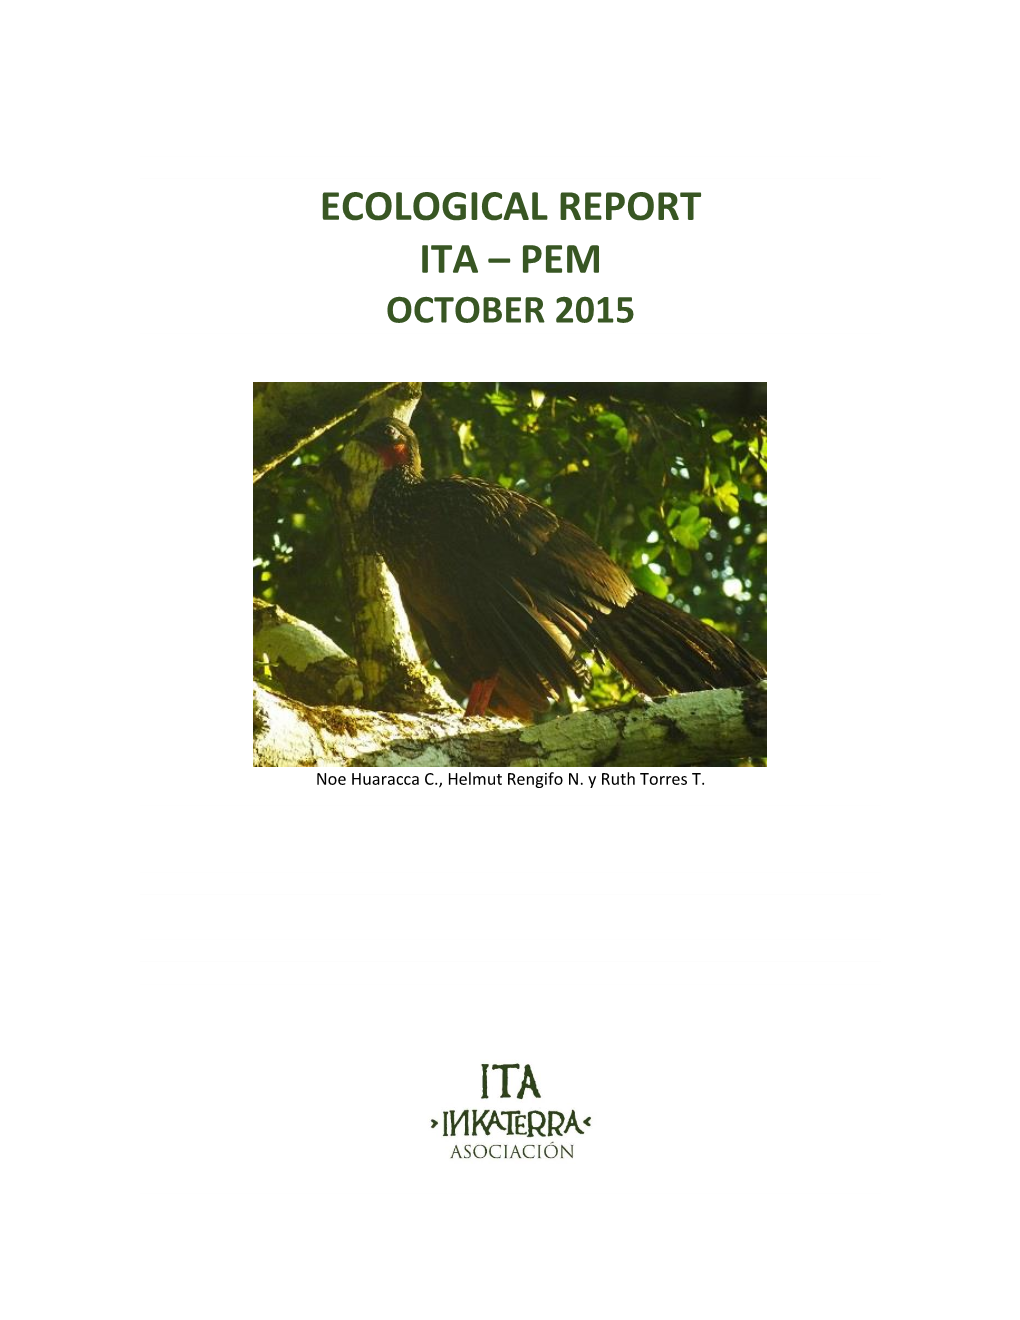 Ecological Report Ita – Pem October 2015